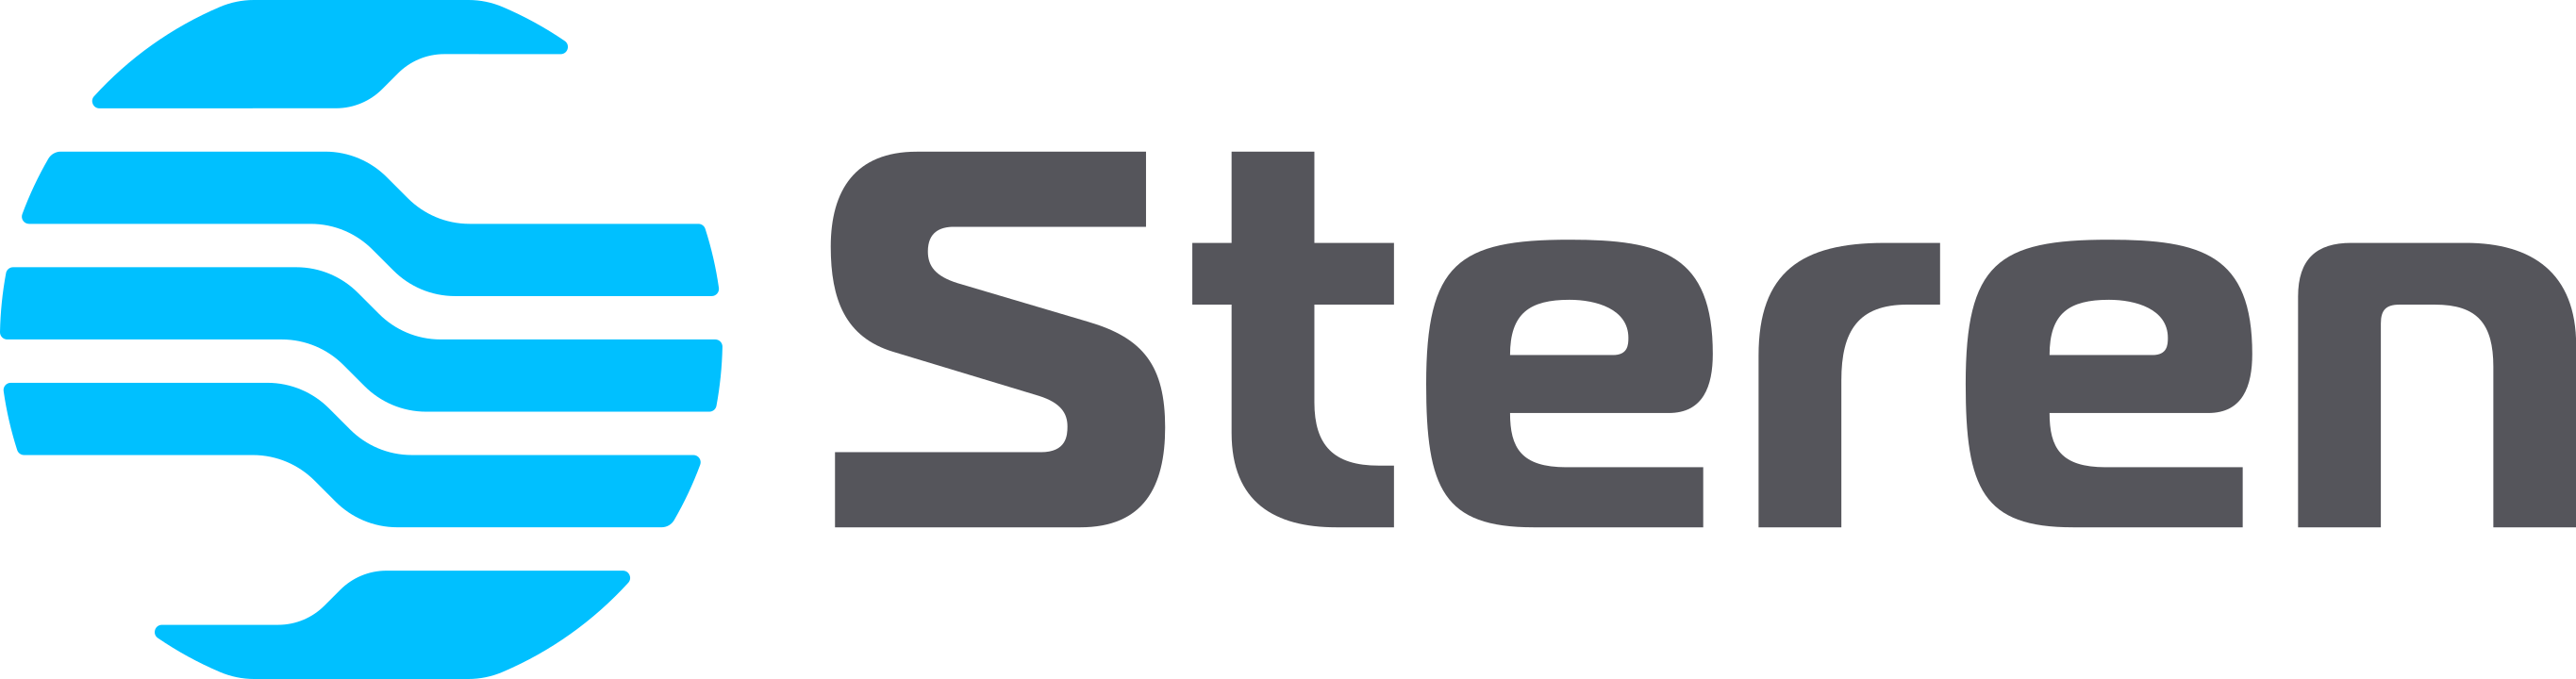 STEREN SPEAKERS US  logo